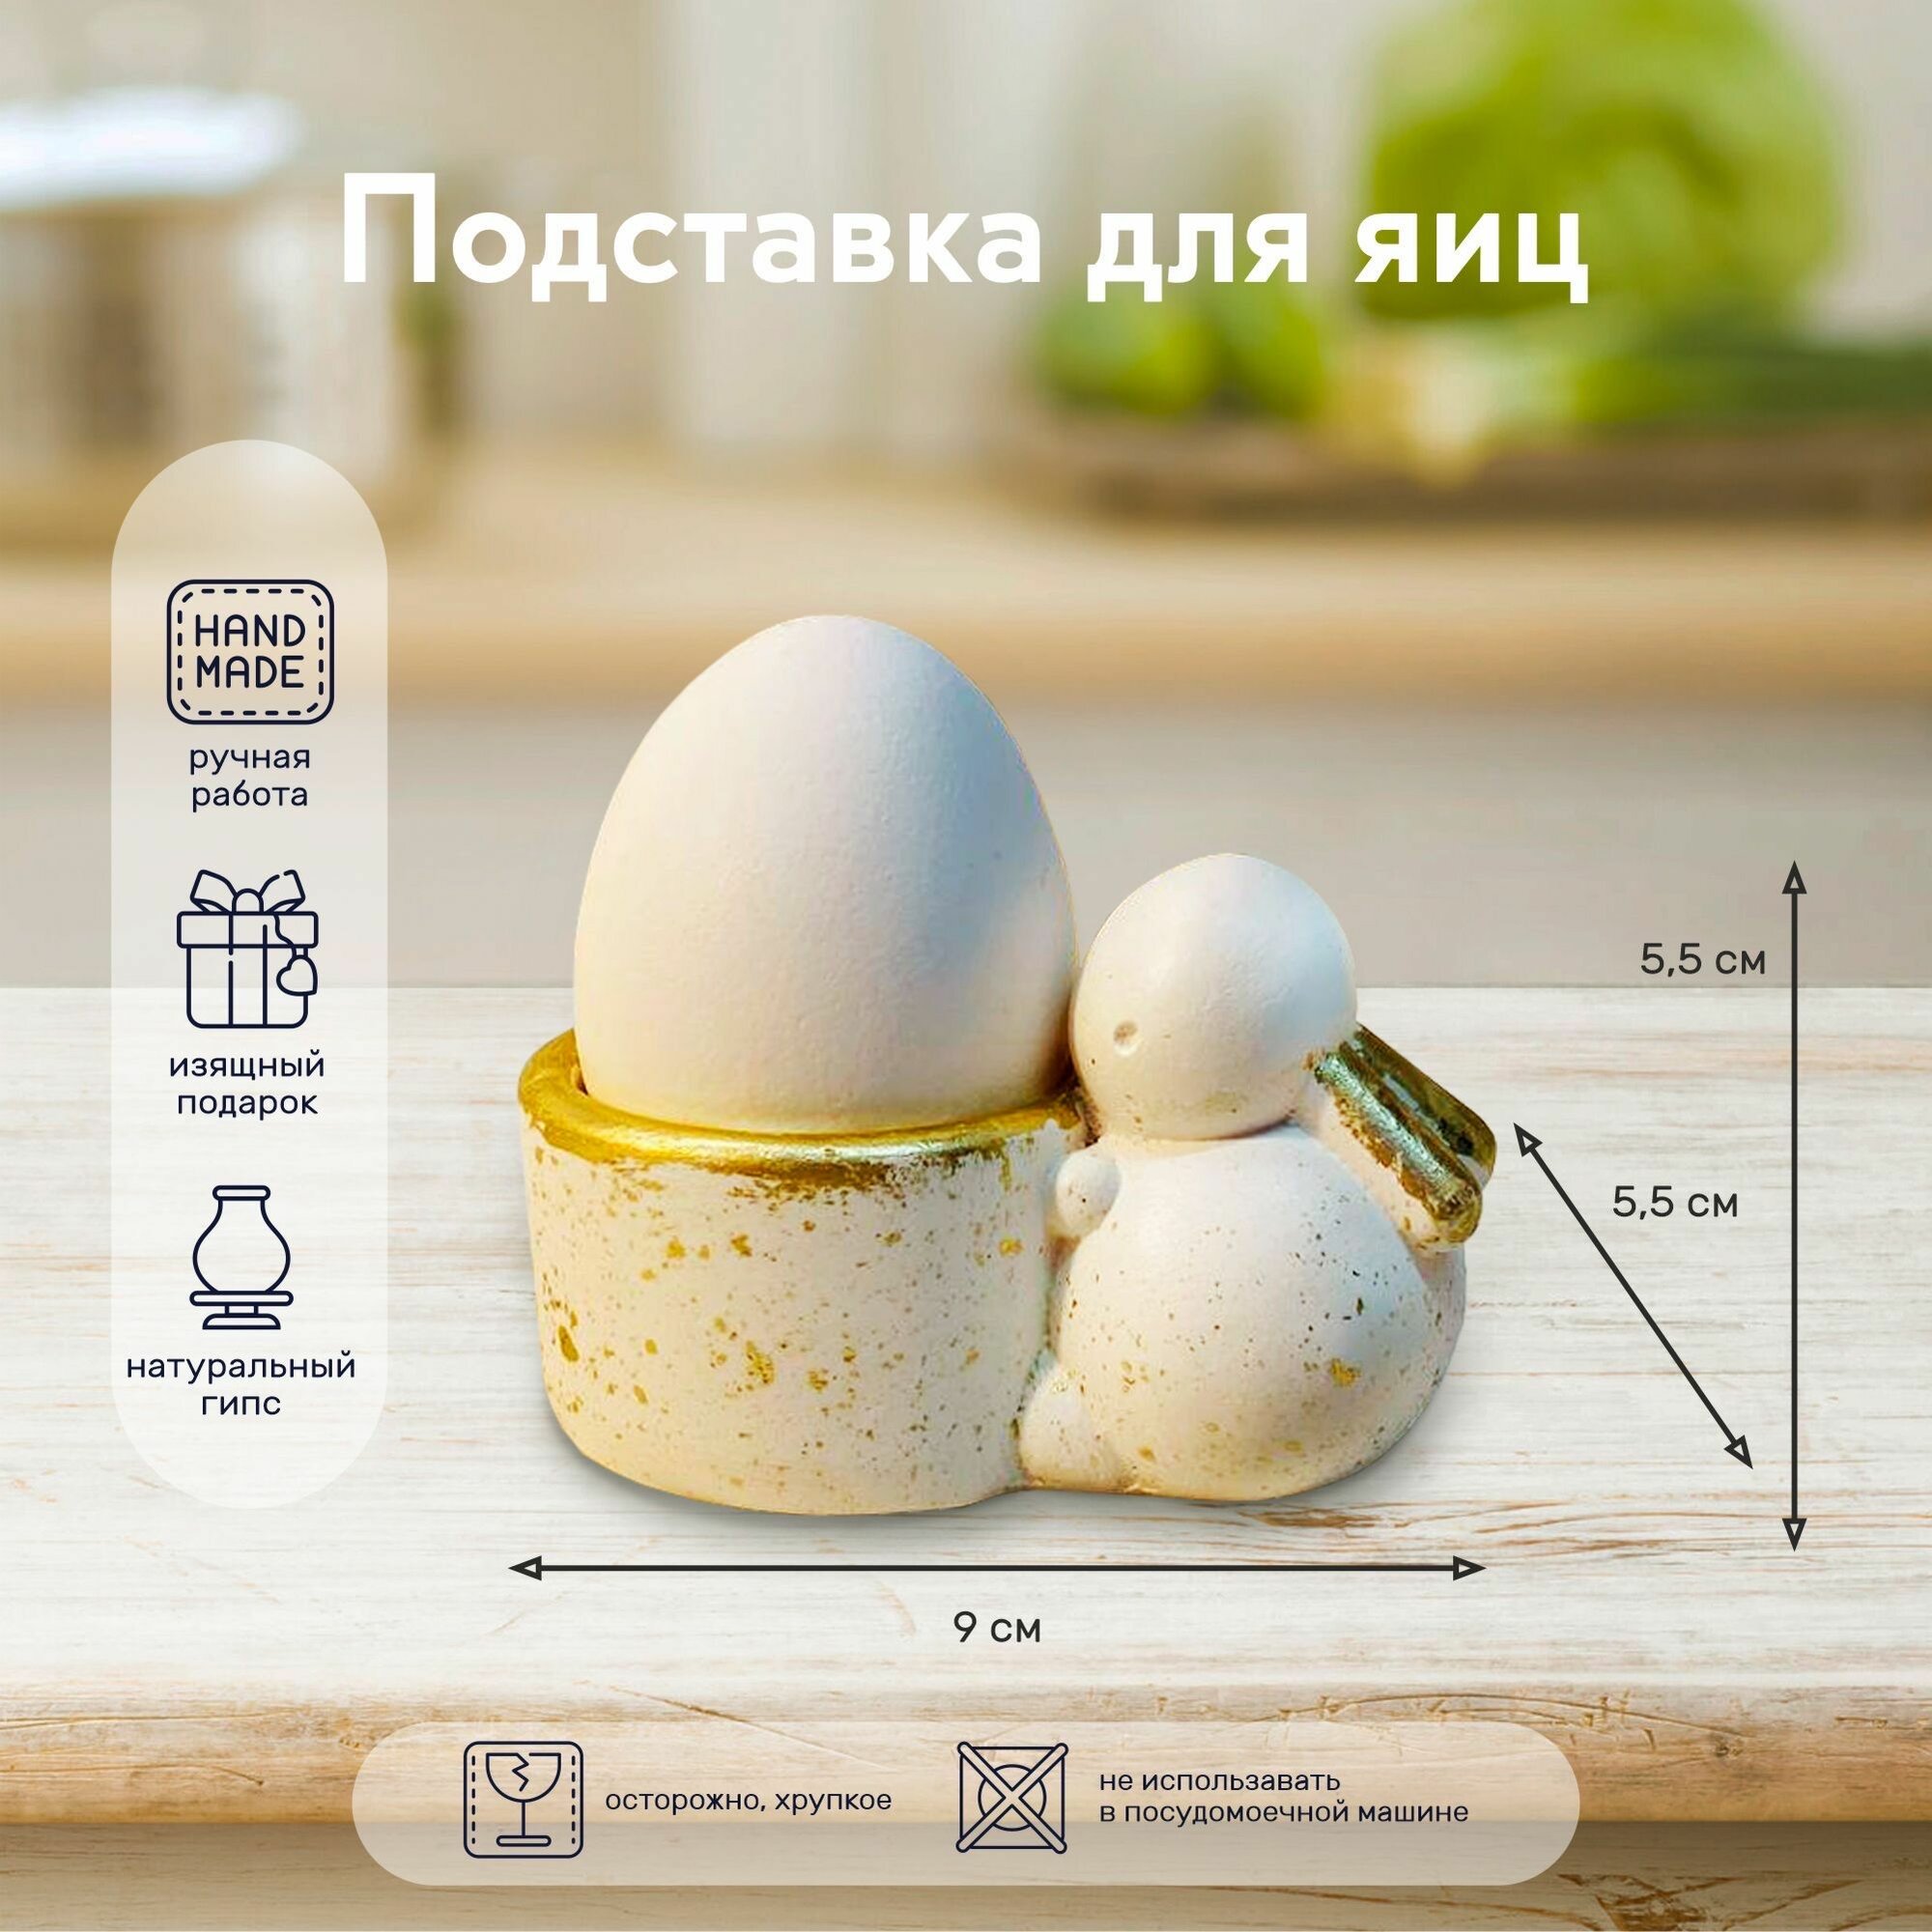 Подставка для яиц "Пасхальный заяц"/ручная работа гипс, сервировка стола к Пасхе